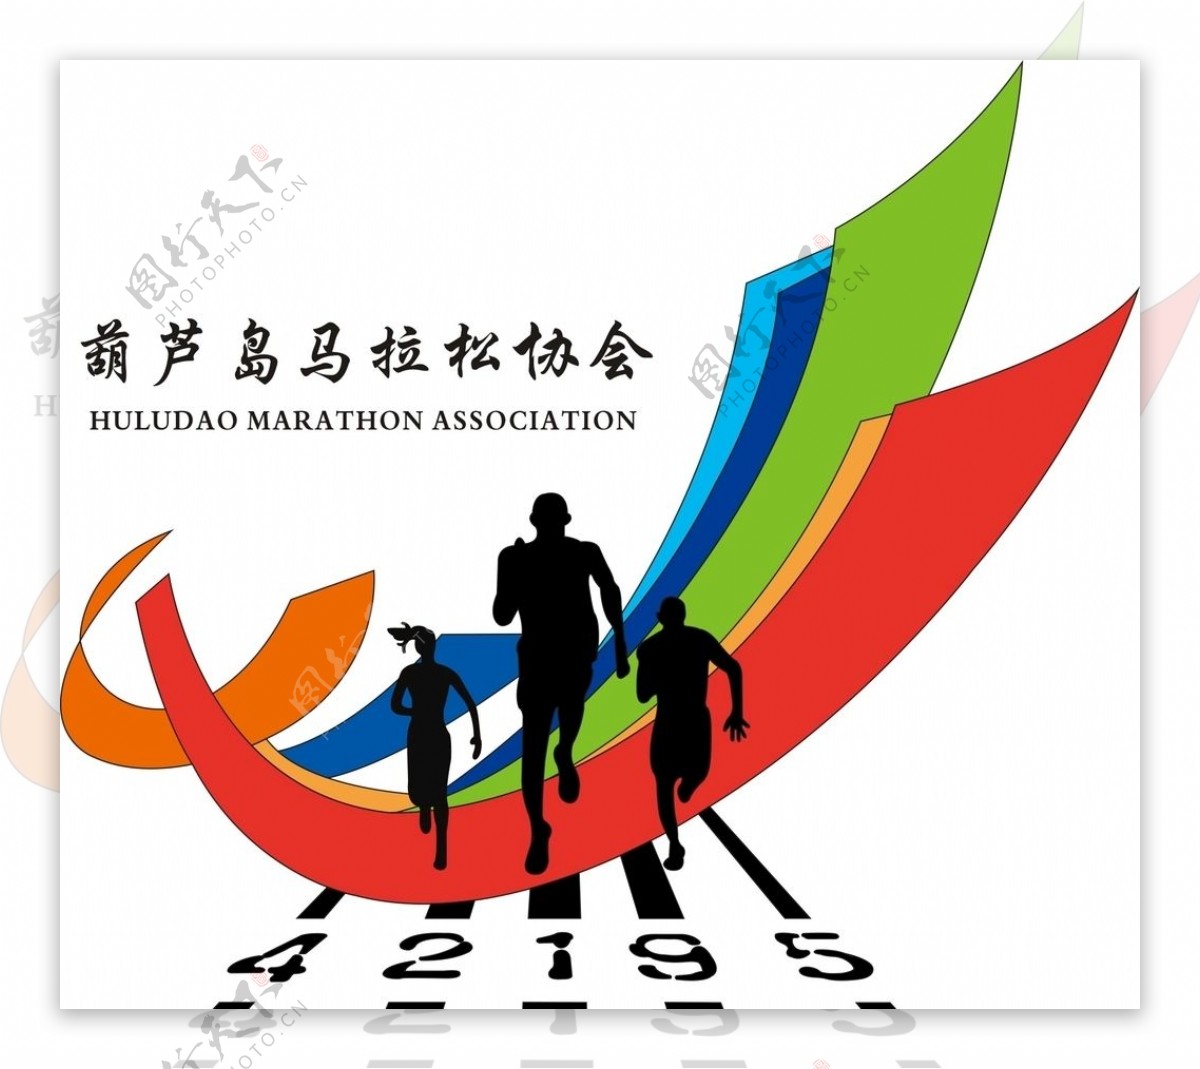 葫芦岛马拉松协会logo标志